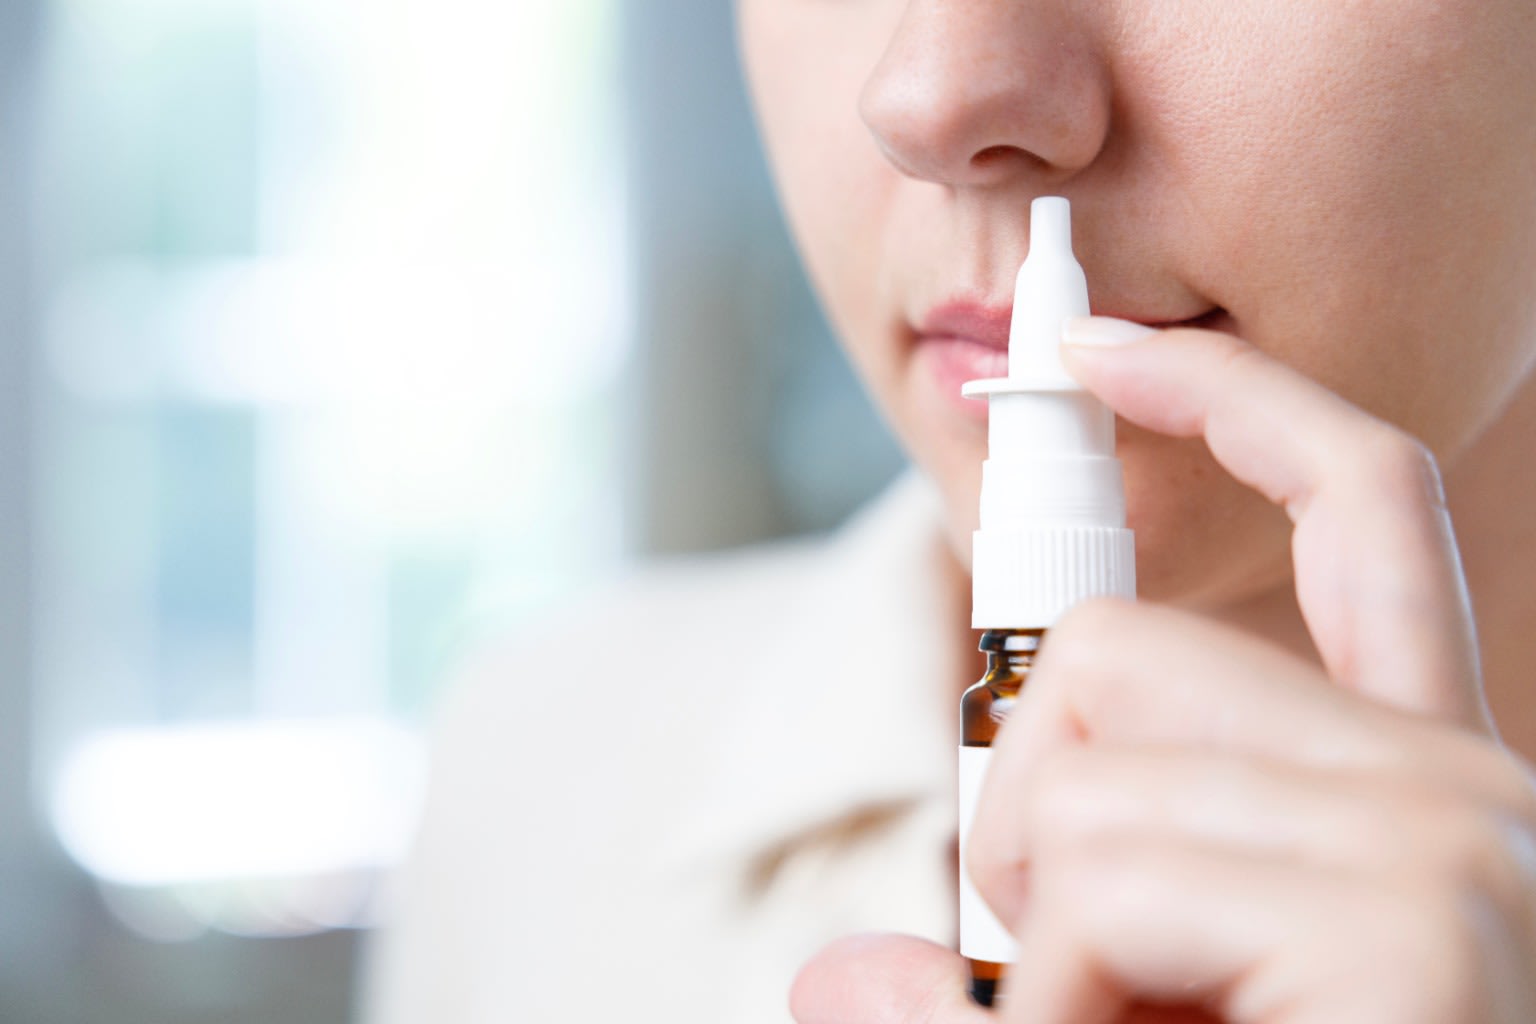 Developing nasal sprays aerosols & inhalers for drug delivery